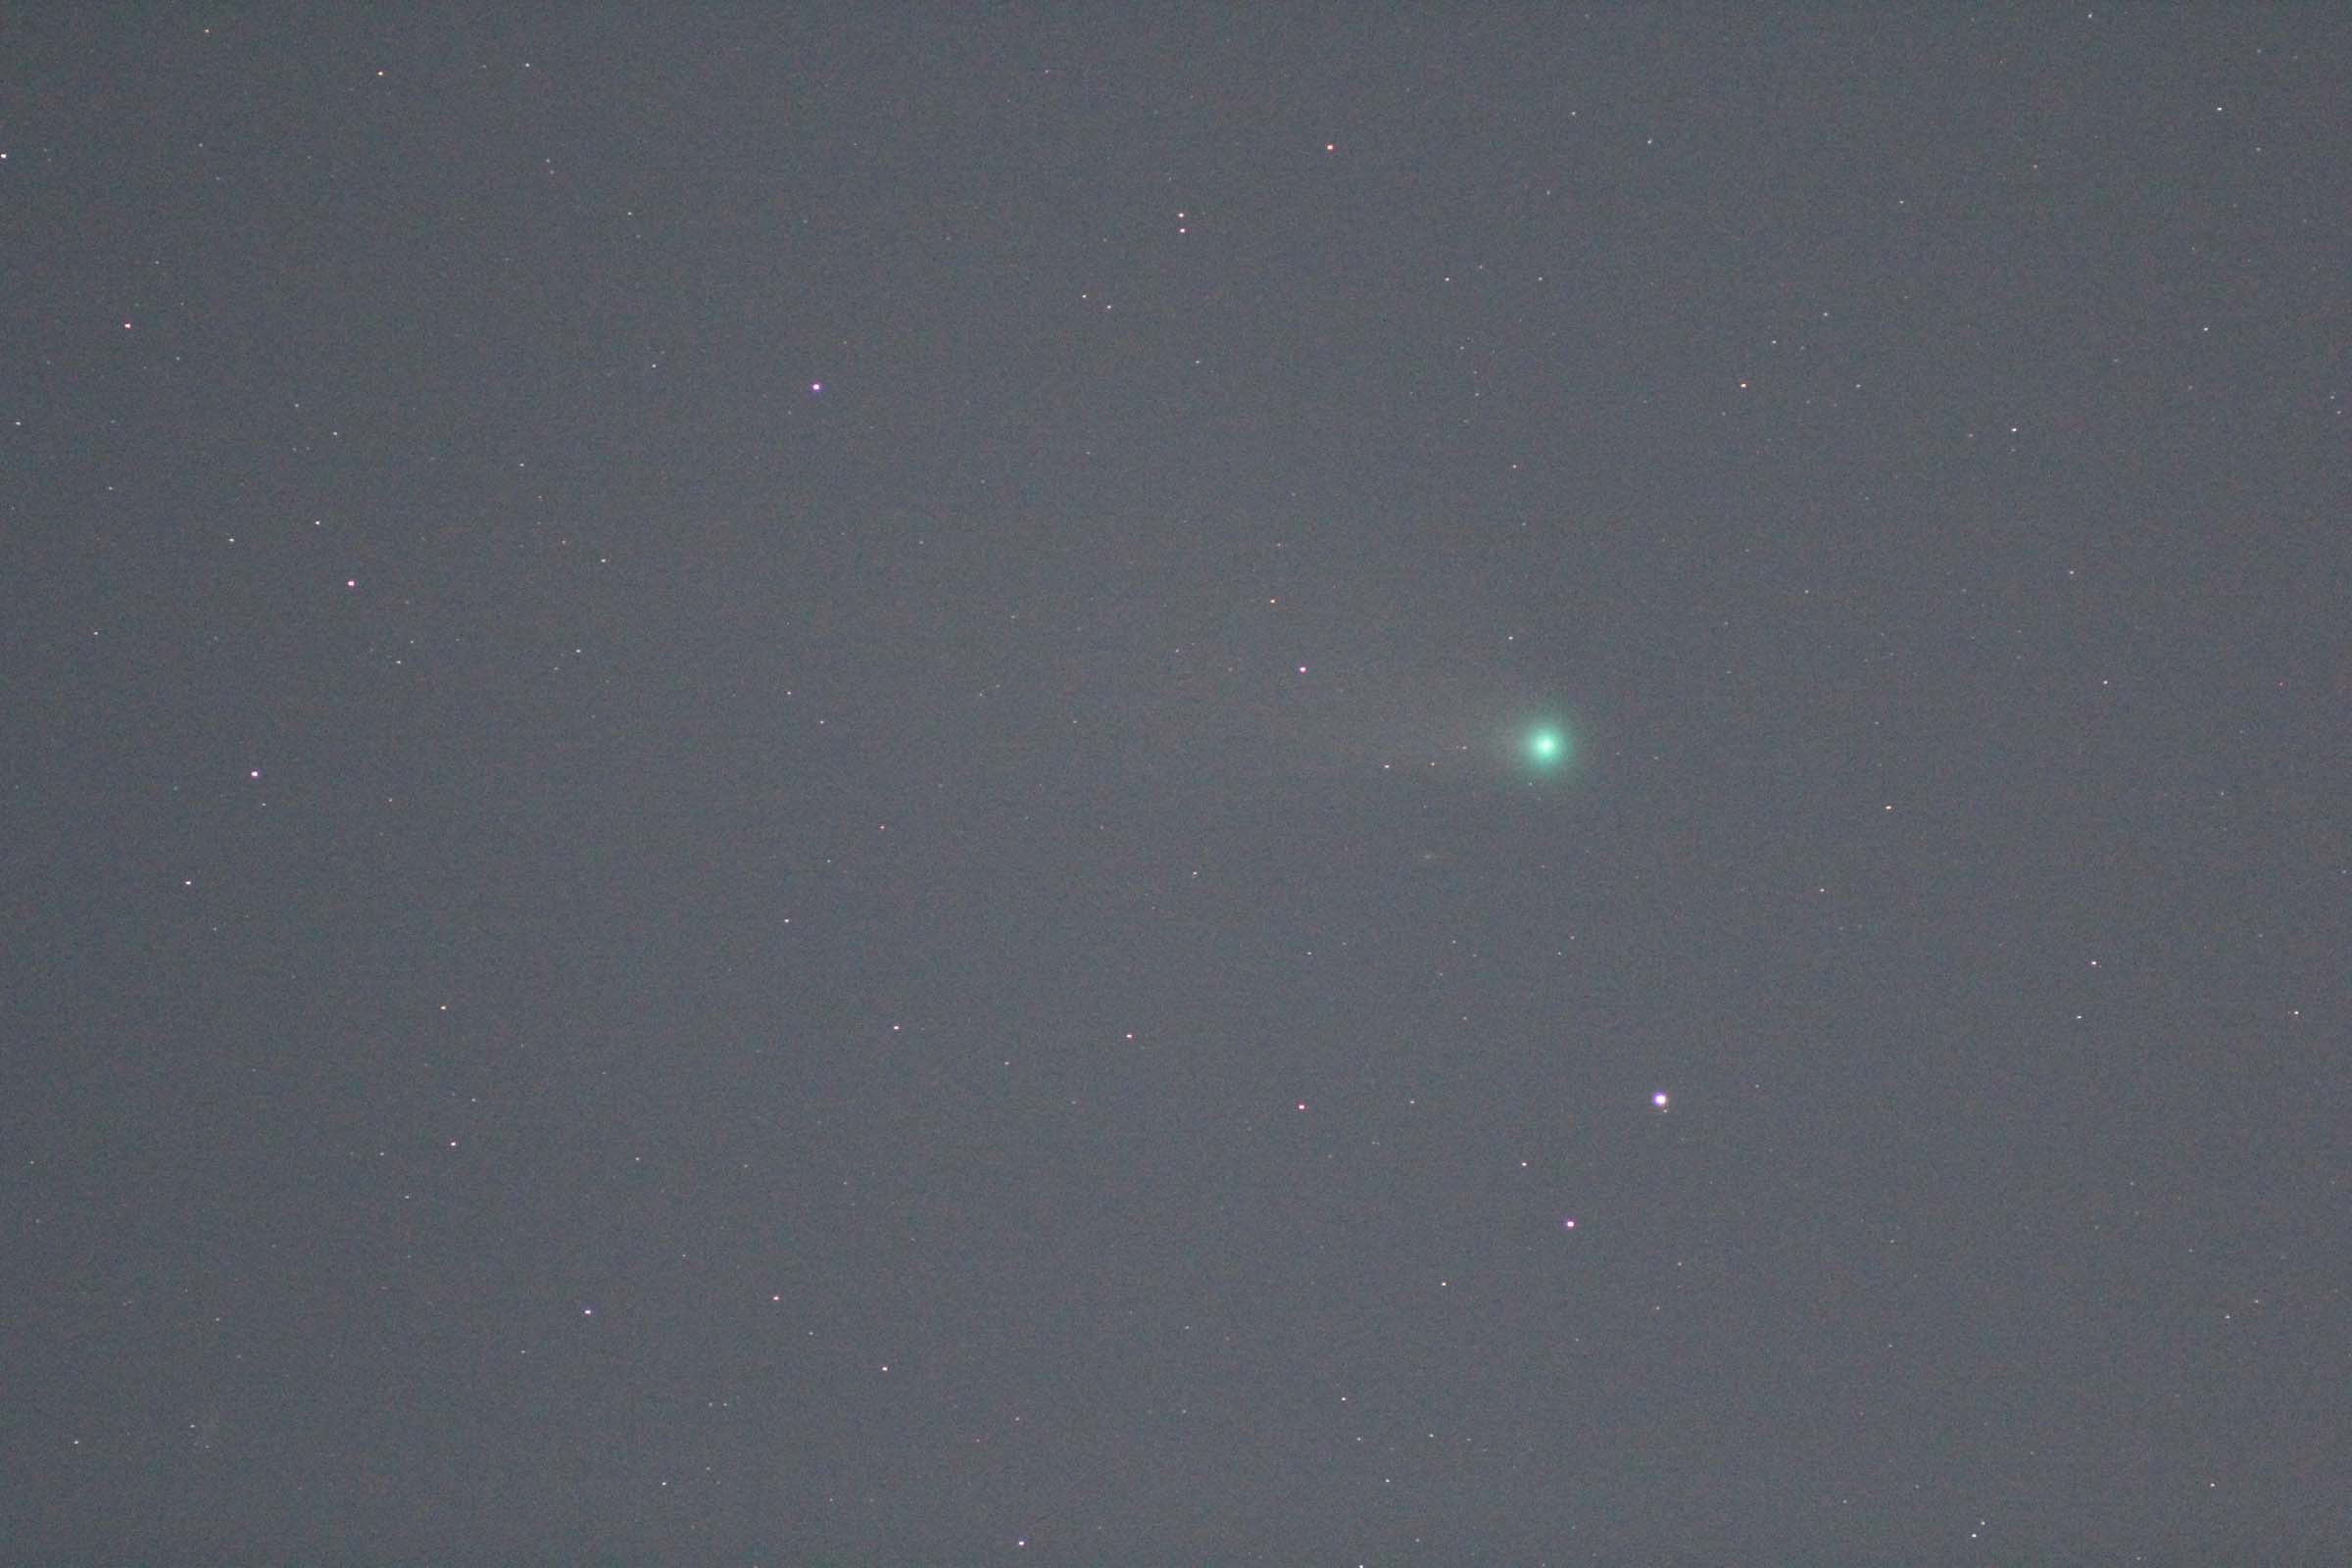 『C/2020 F3 ネオワイズ彗星(2)』(2020年7月31日)